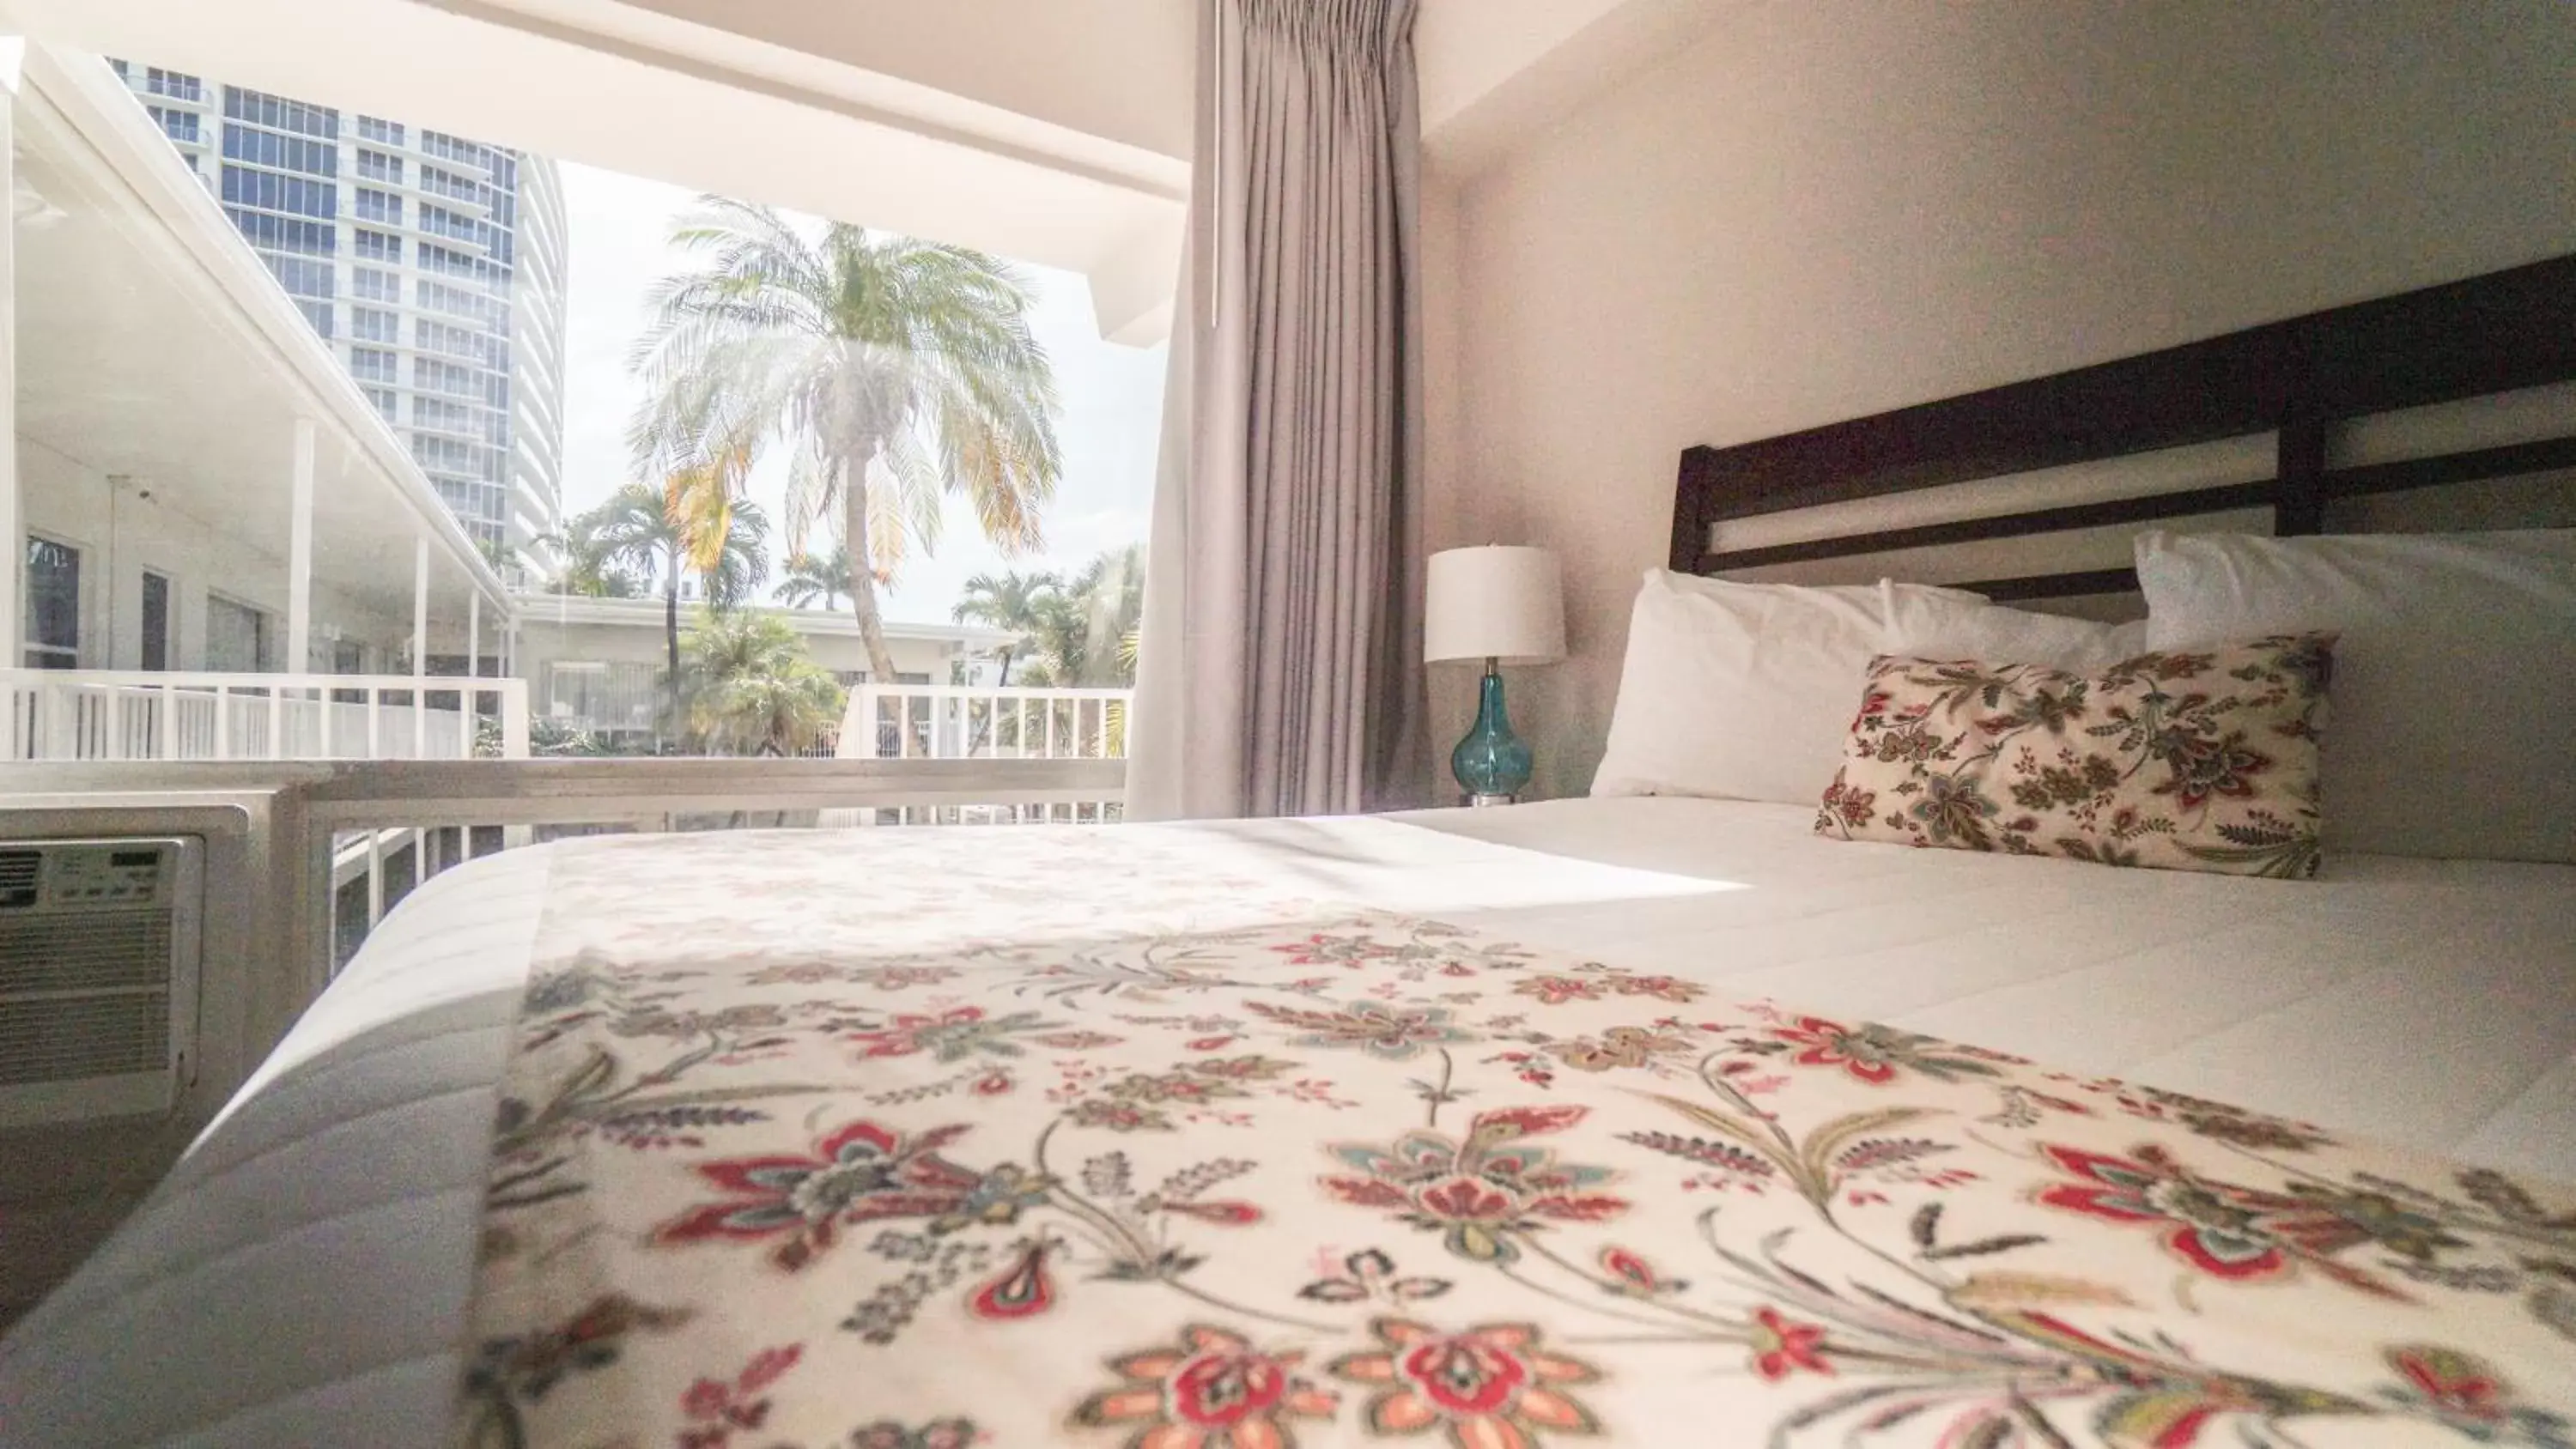 Bedroom, Bed in Soleado Hotel